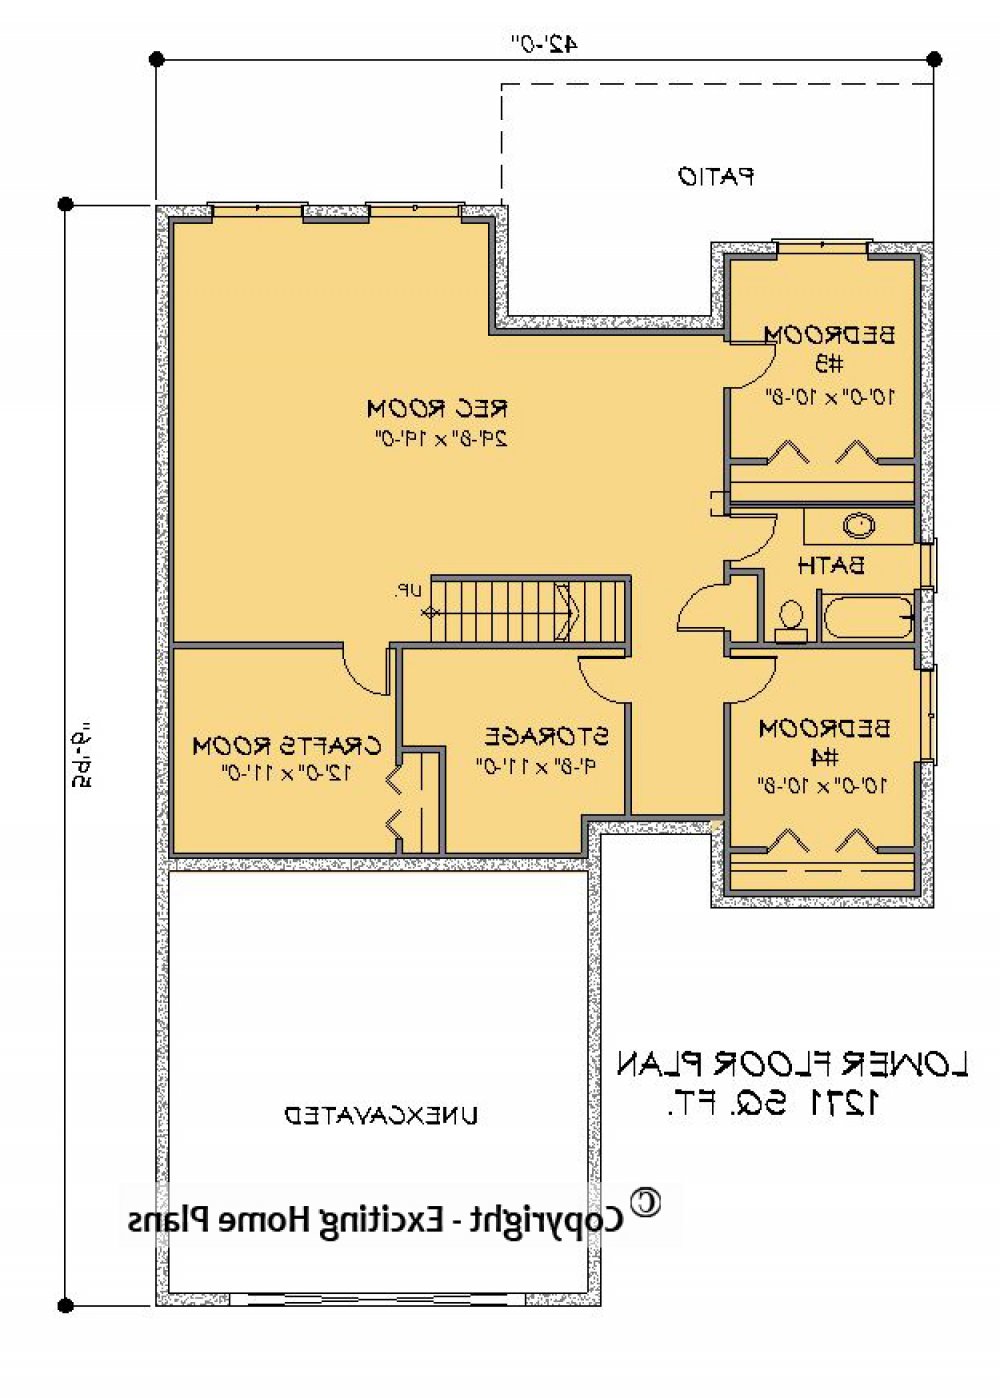 House Plan E1300-10 Lower Floor Plan REVERSE